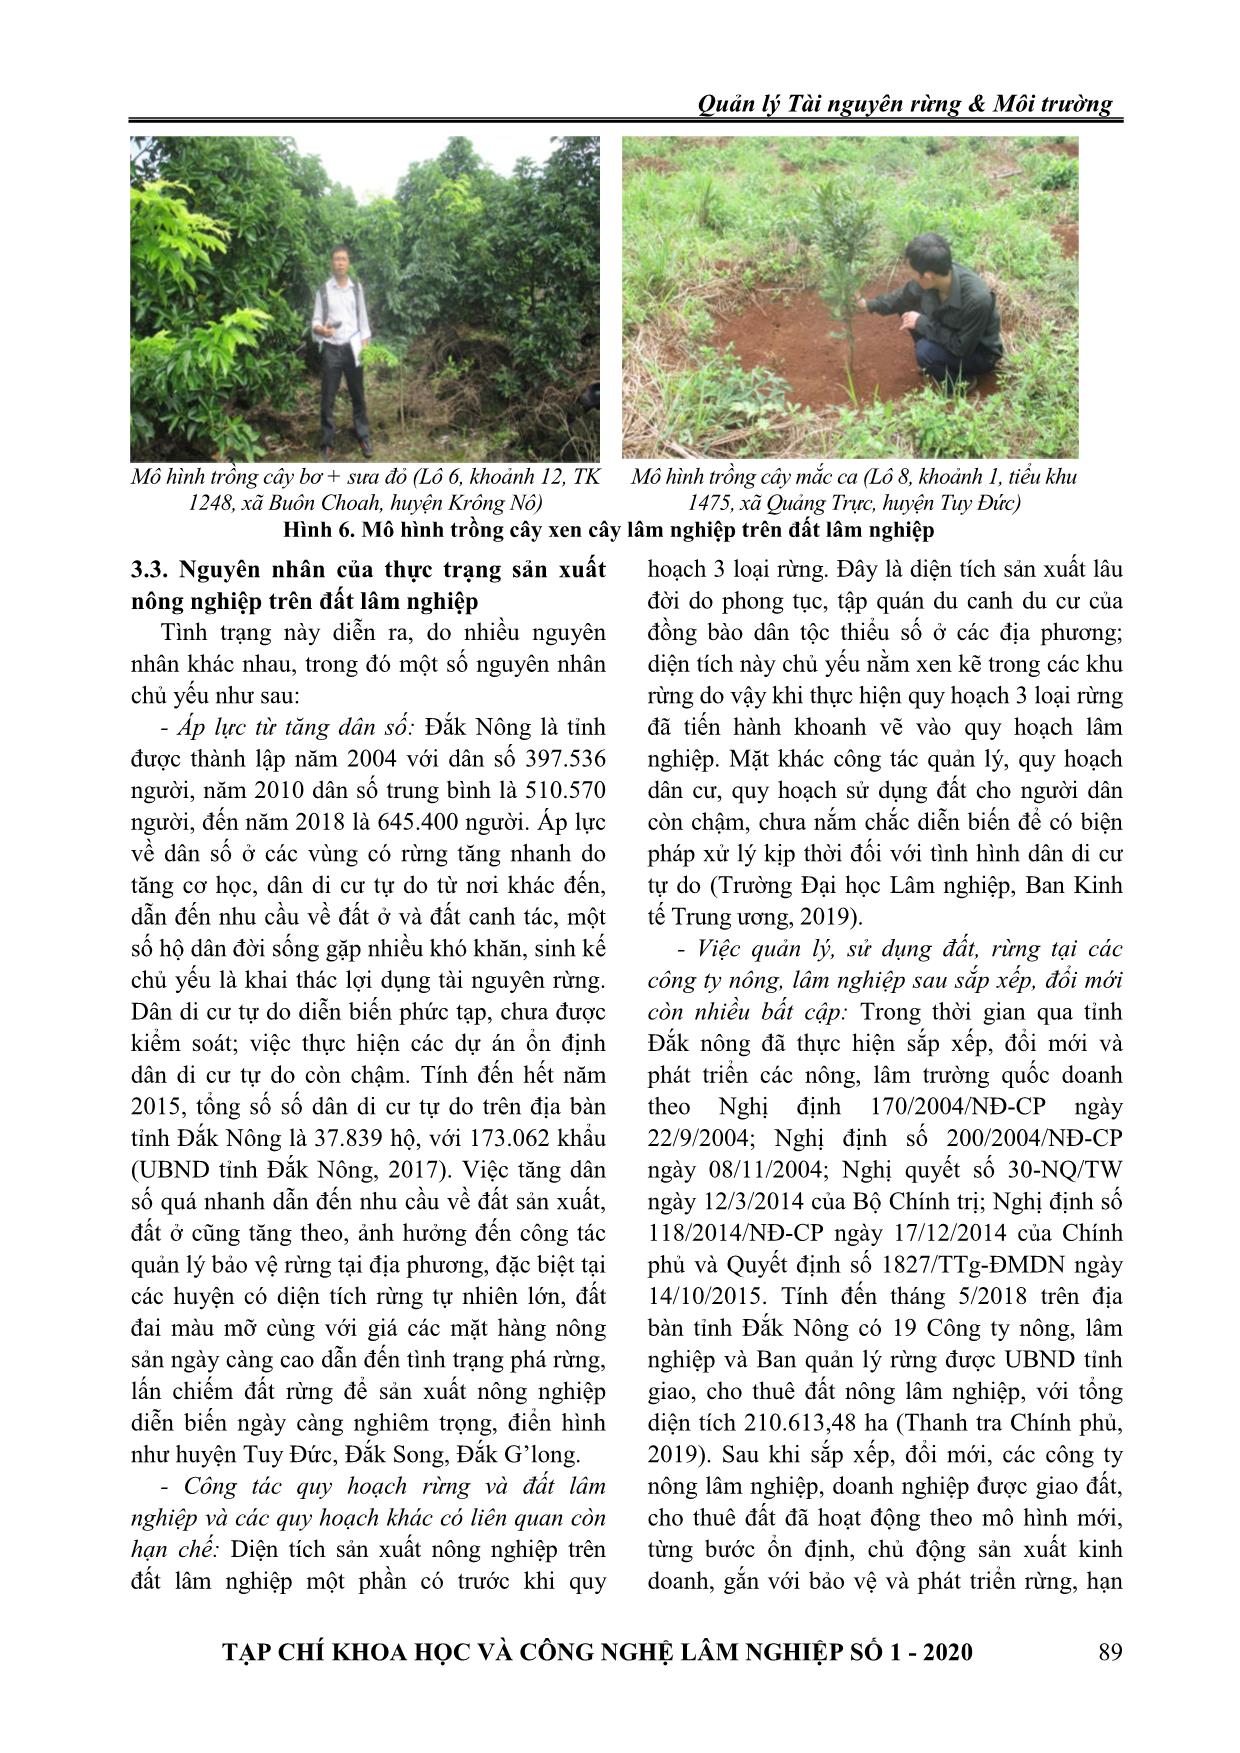 Giải pháp quản lý đất lâm nghiệp hiện đang sản xuất nông nghiệp tại tỉnh Đắk Nông trang 6